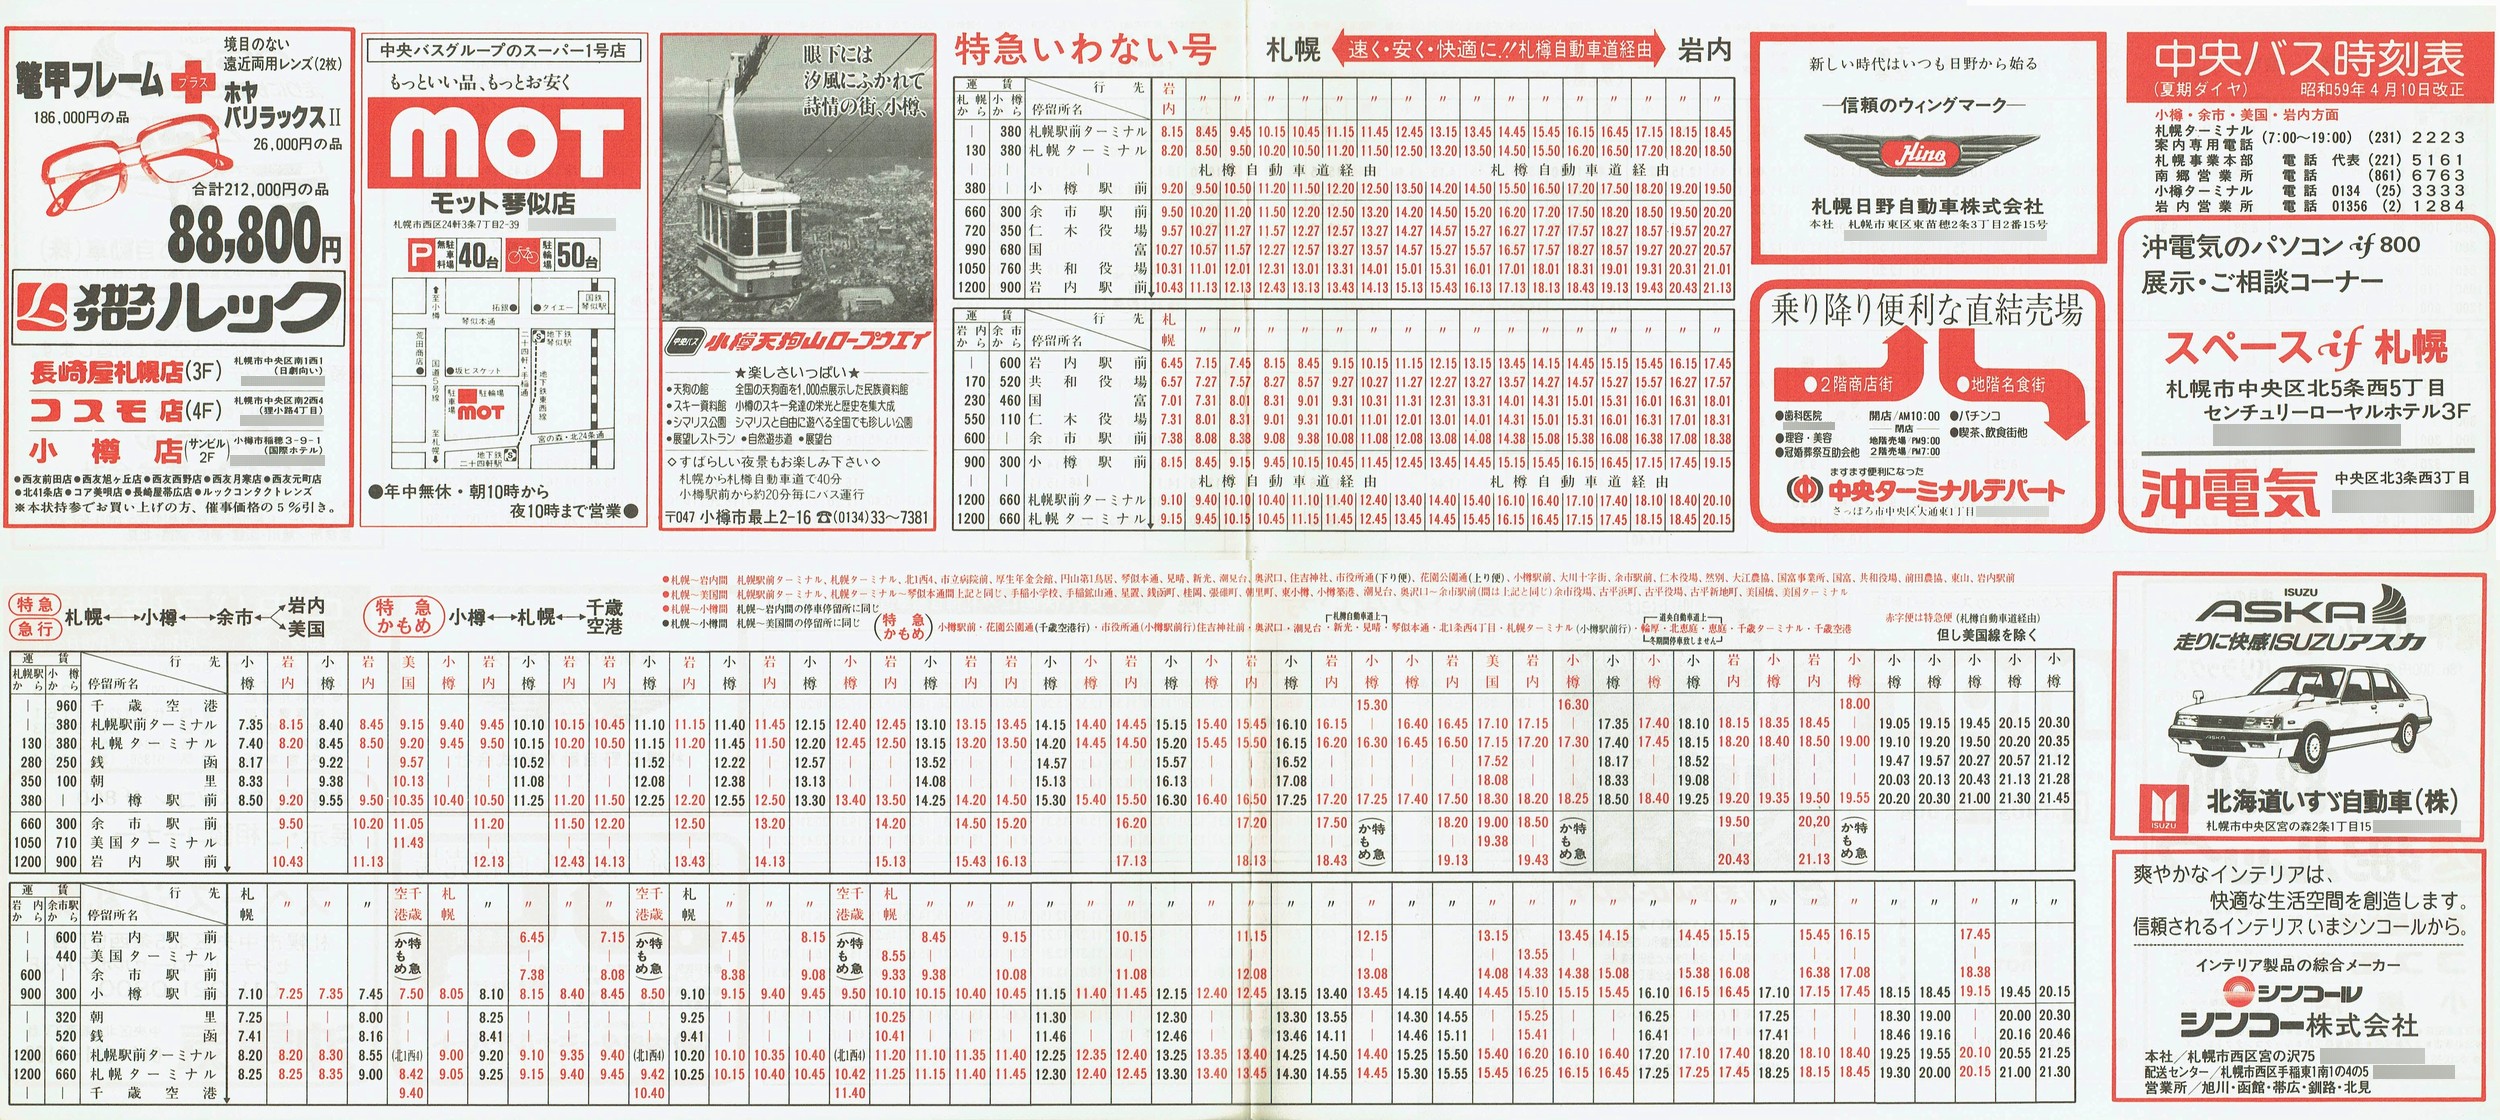 1984-04-10改正_北海道中央バス(札幌)_小樽・美国・岩内方面時刻表